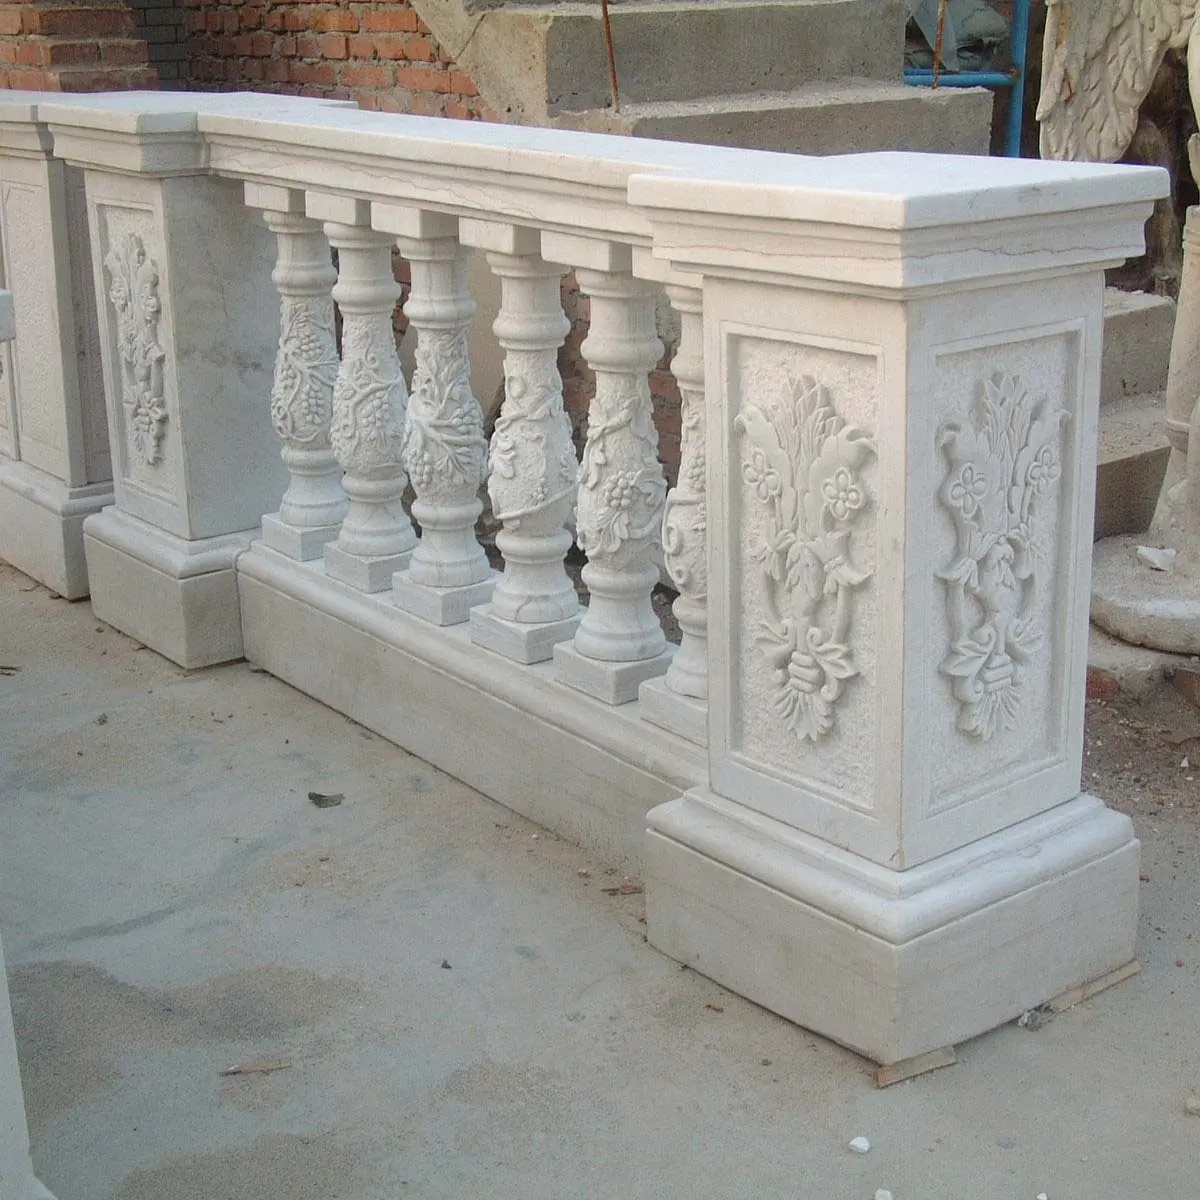 Marmor balustrade stein balustraden high end haus dekorative marmor geländer weiß marmor balkon balustrade